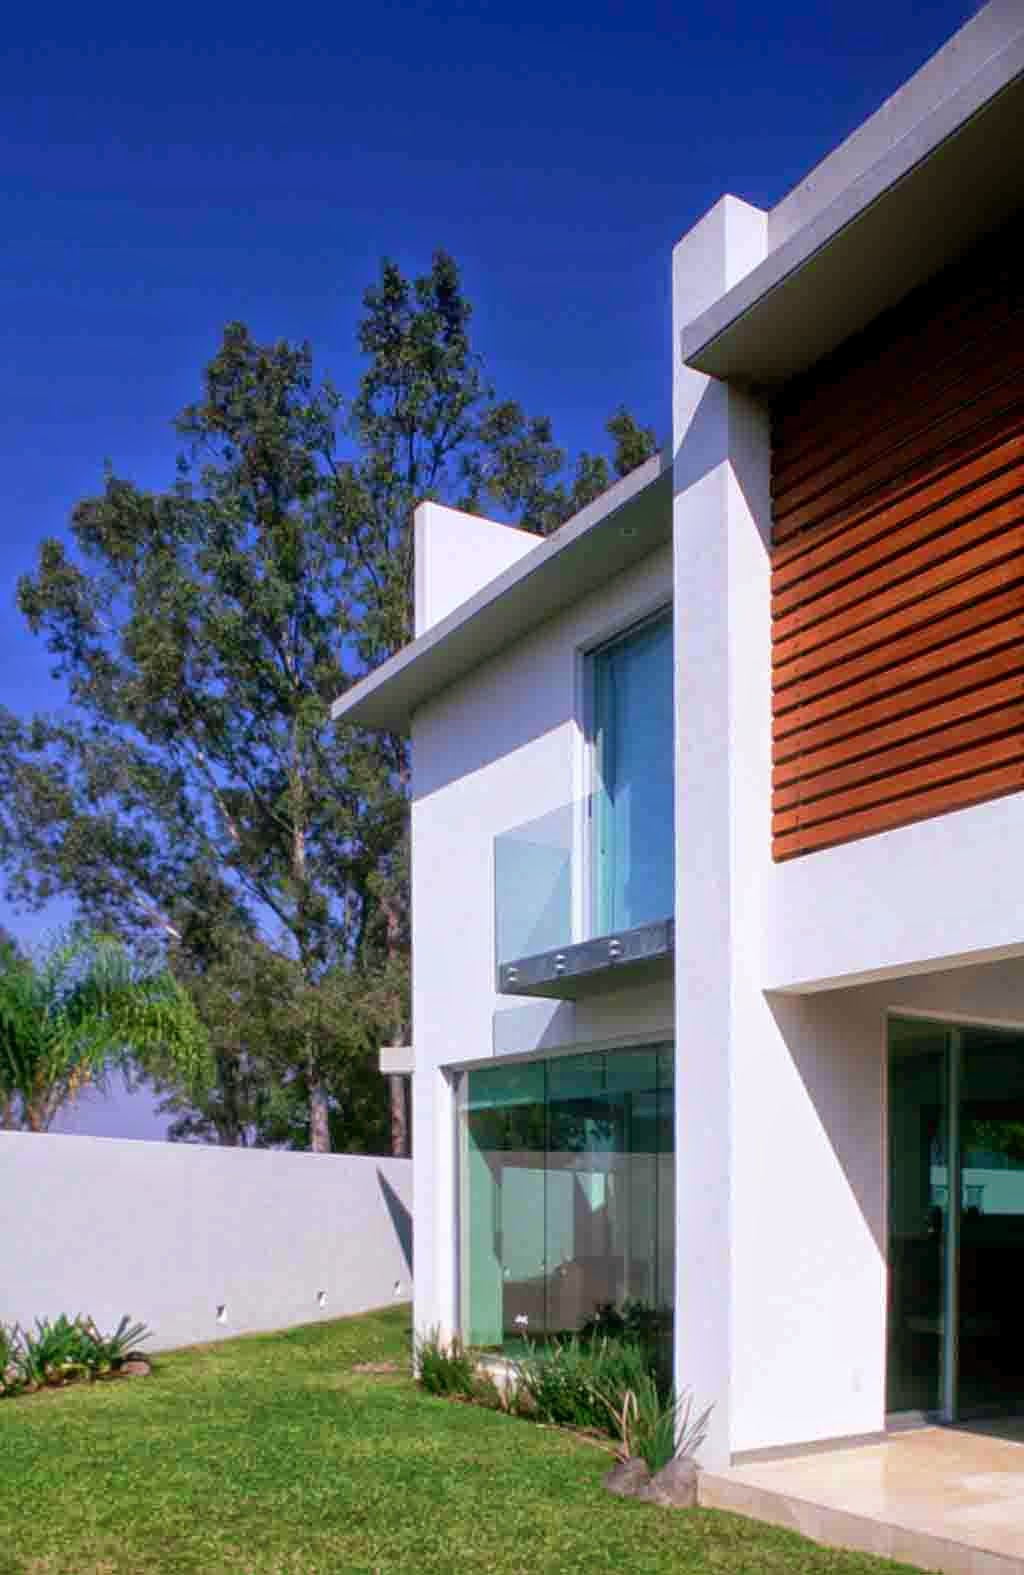 Foto Rumah minimalis dengan lahan miring House E by Agraz Arquitectos